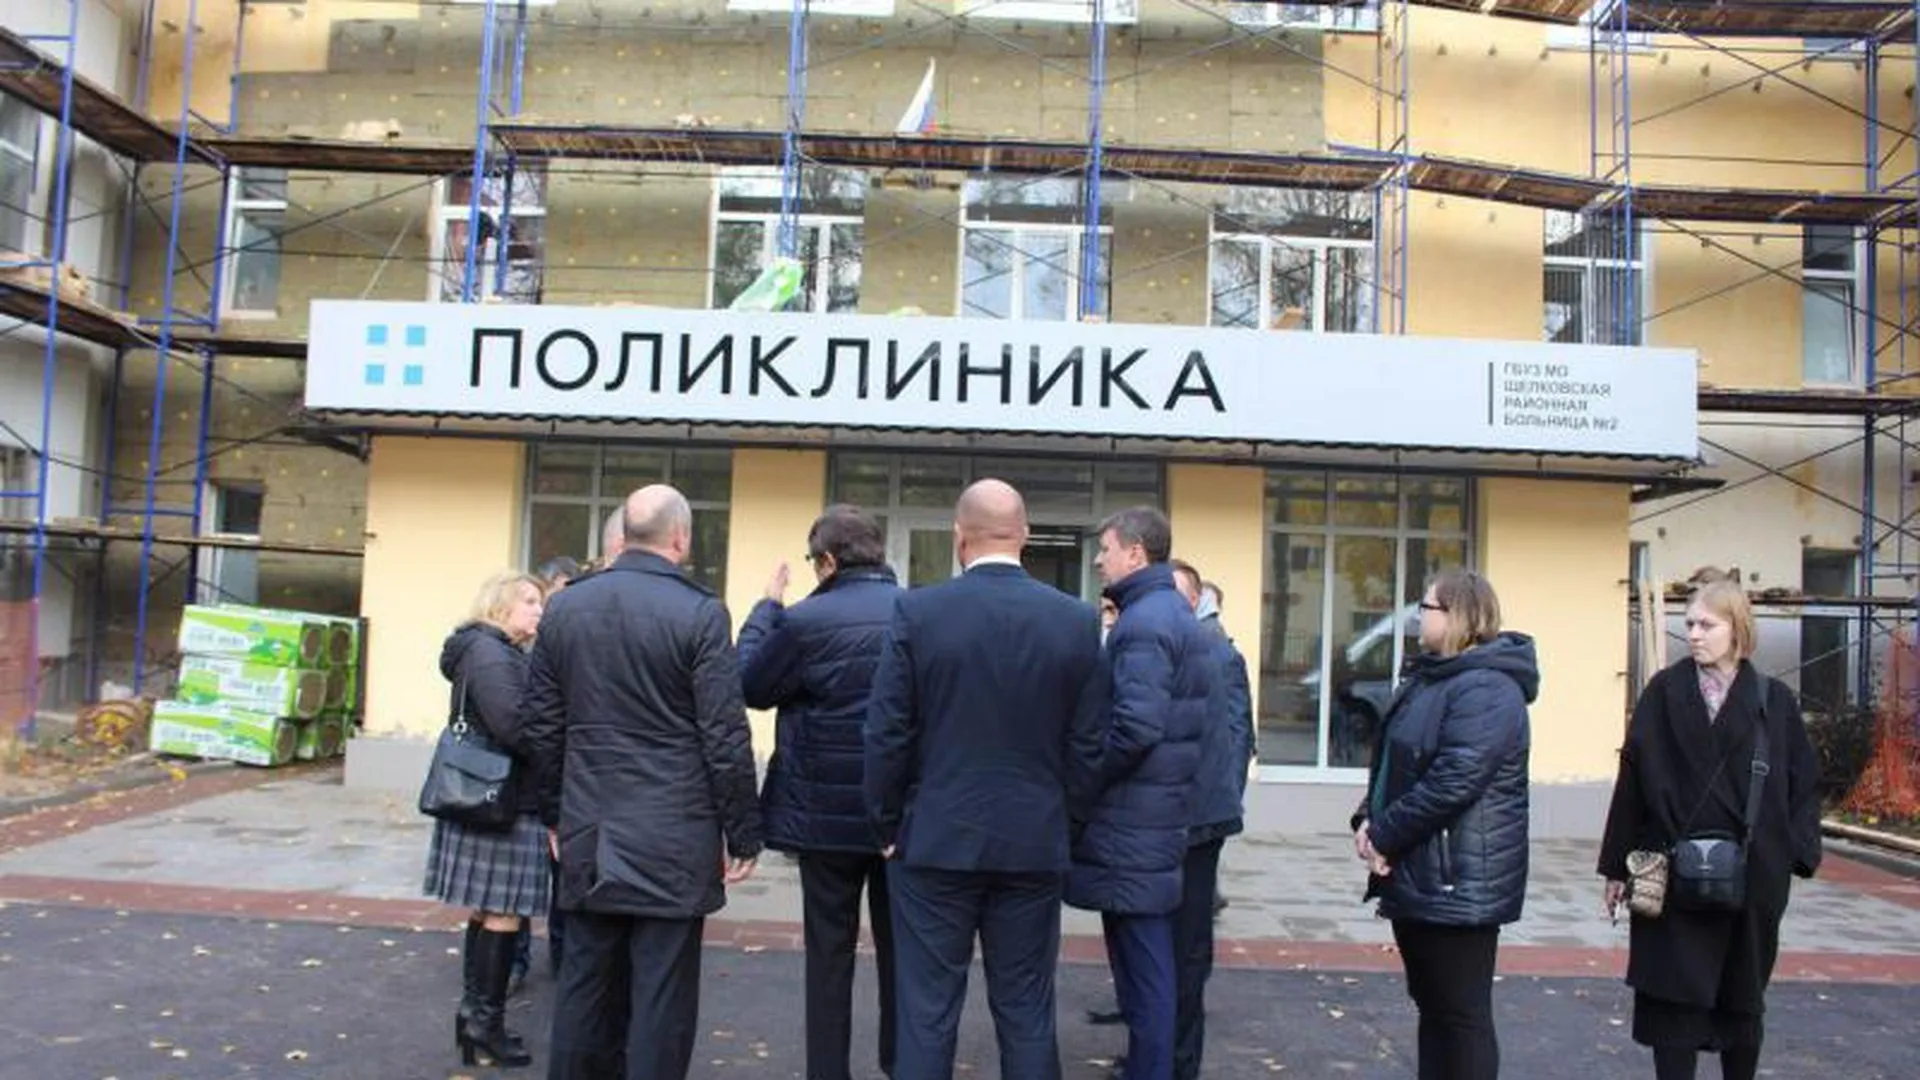 Затянувшийся ремонт больницы в Щелково проконтролируют активисты